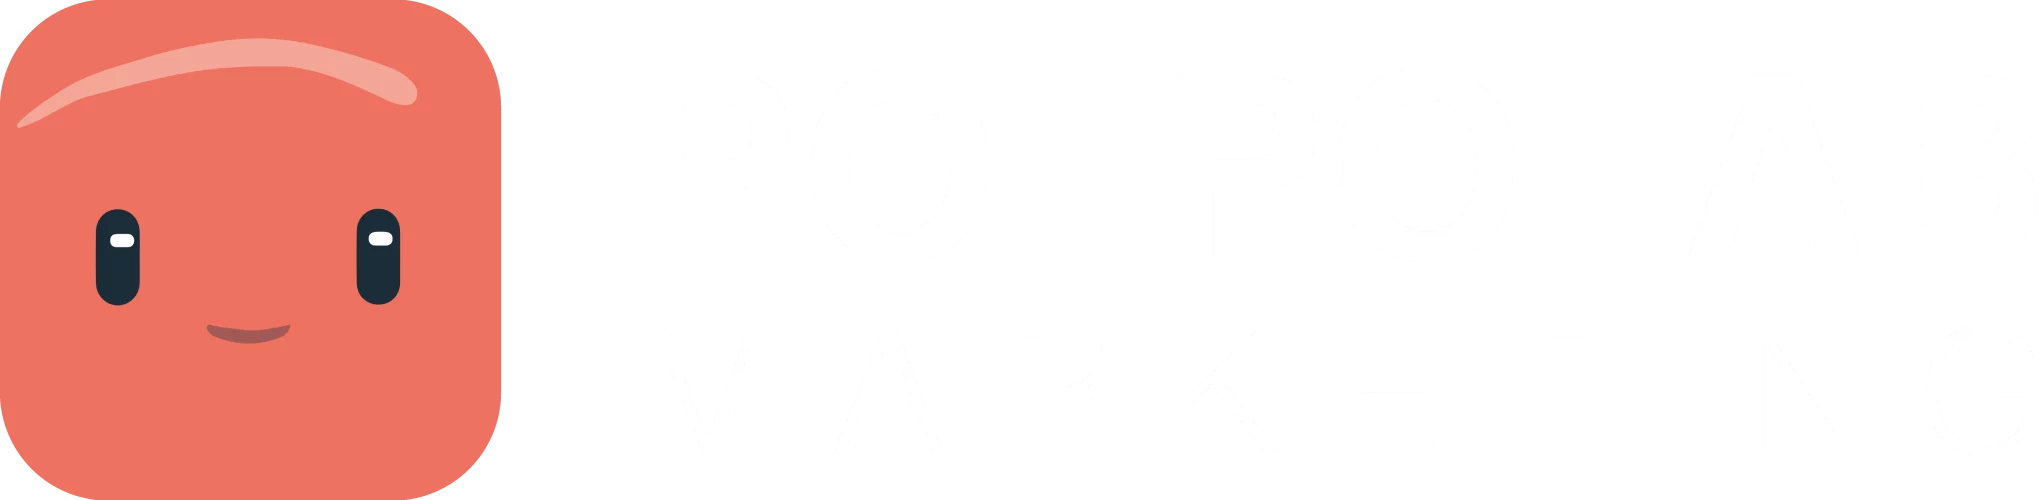 Polpolab